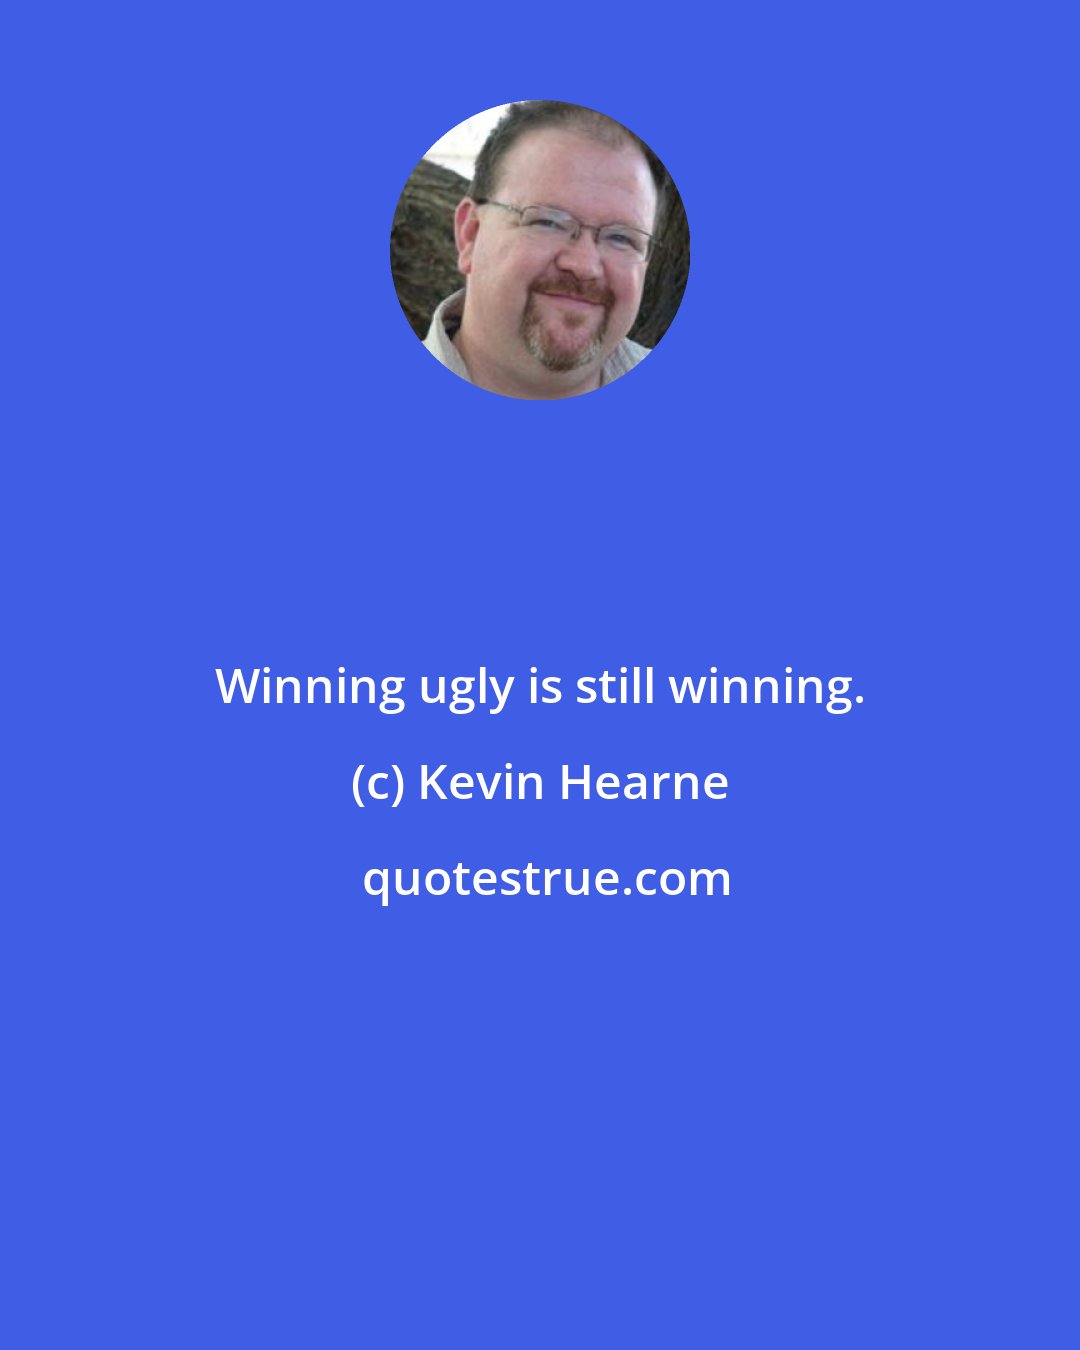 Kevin Hearne: Winning ugly is still winning.